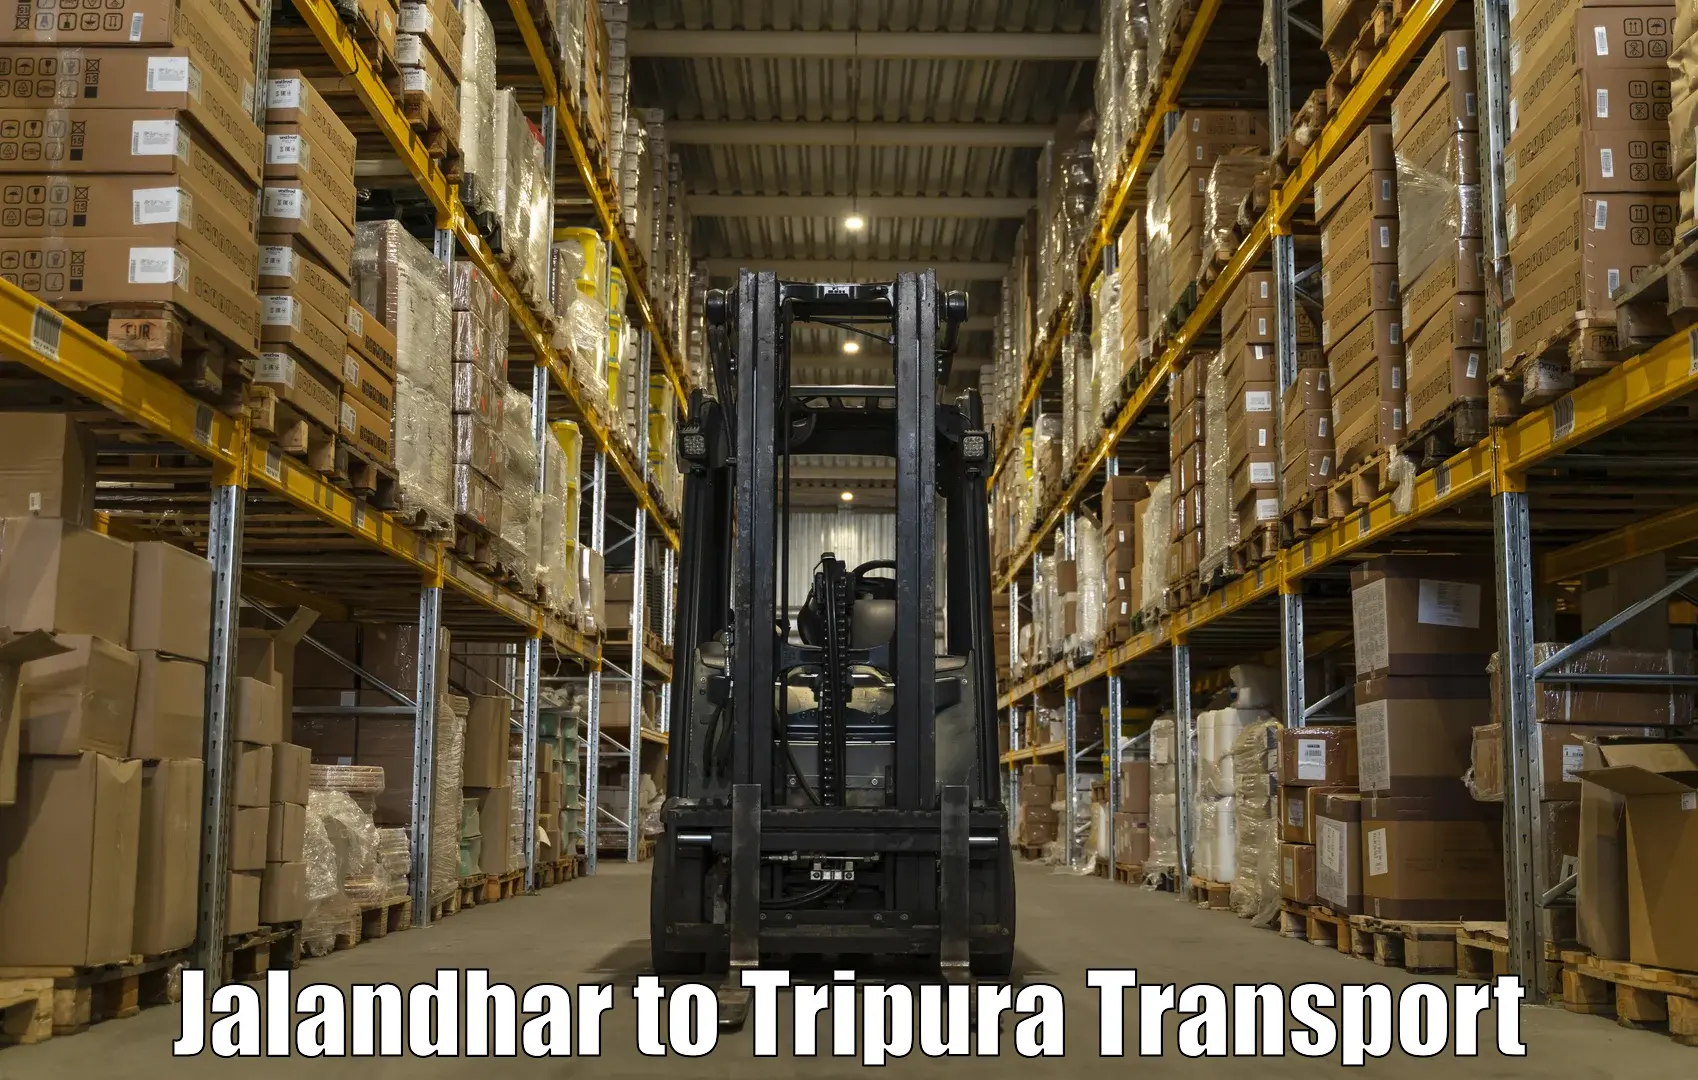 Pick up transport service Jalandhar to Udaipur Tripura